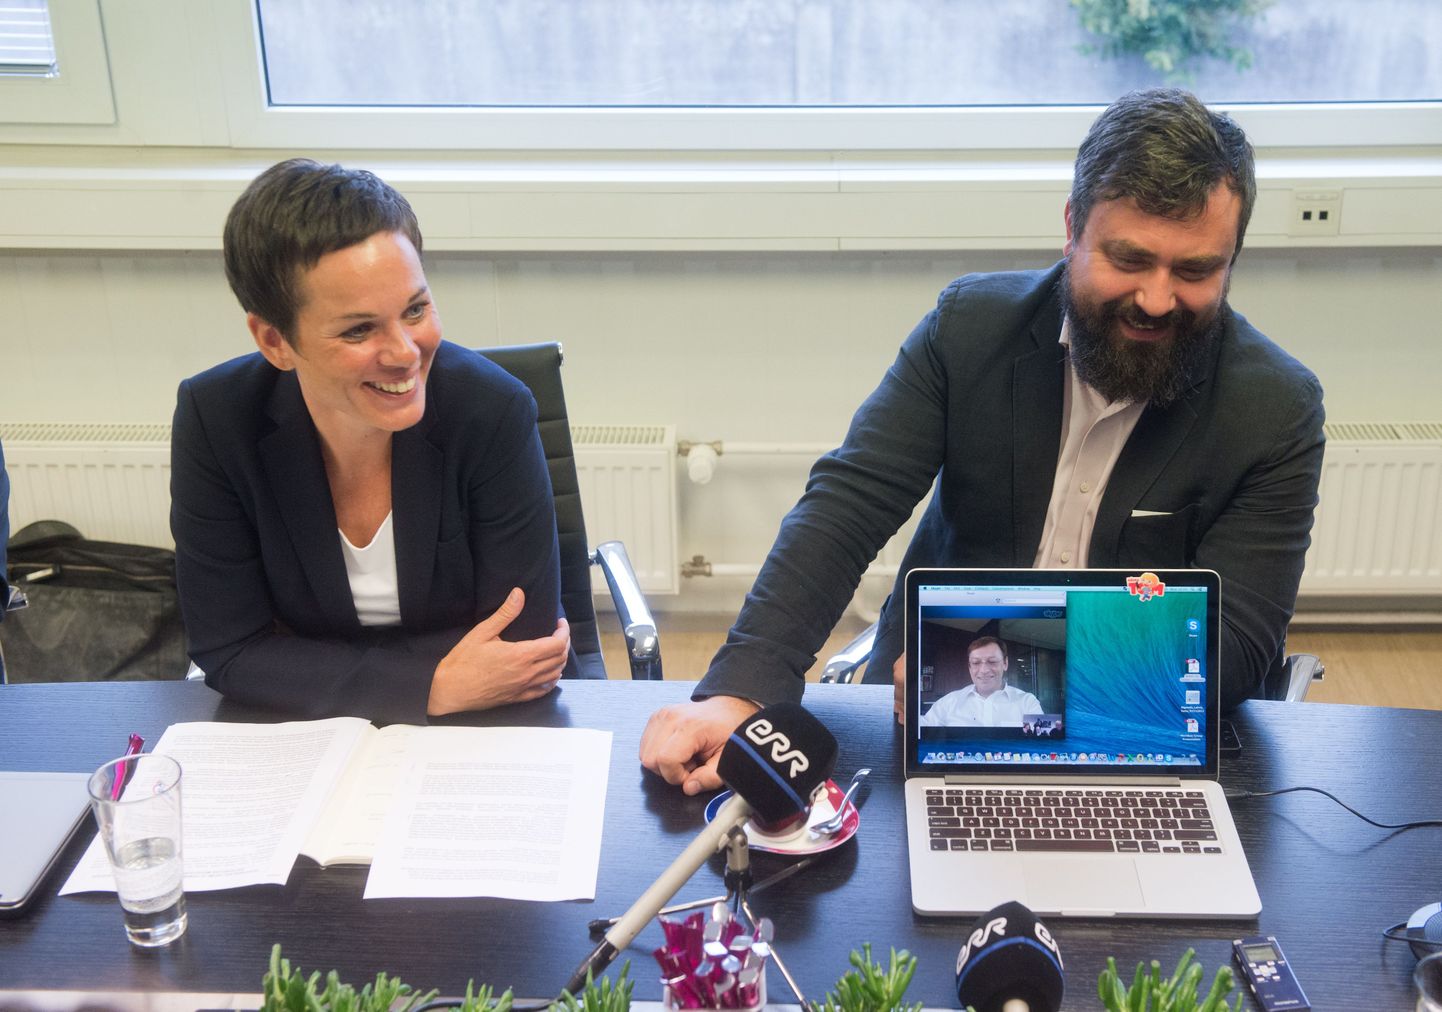 Premia Foodsi juhatuse esimees katre Kõvask, nõukogu esimees Indrek Kasela pressikonverentsil kus Skype'i teel vastab küsimustele ettevõtte jäätiseäri uus omanik Andrei Beshmelnitski.